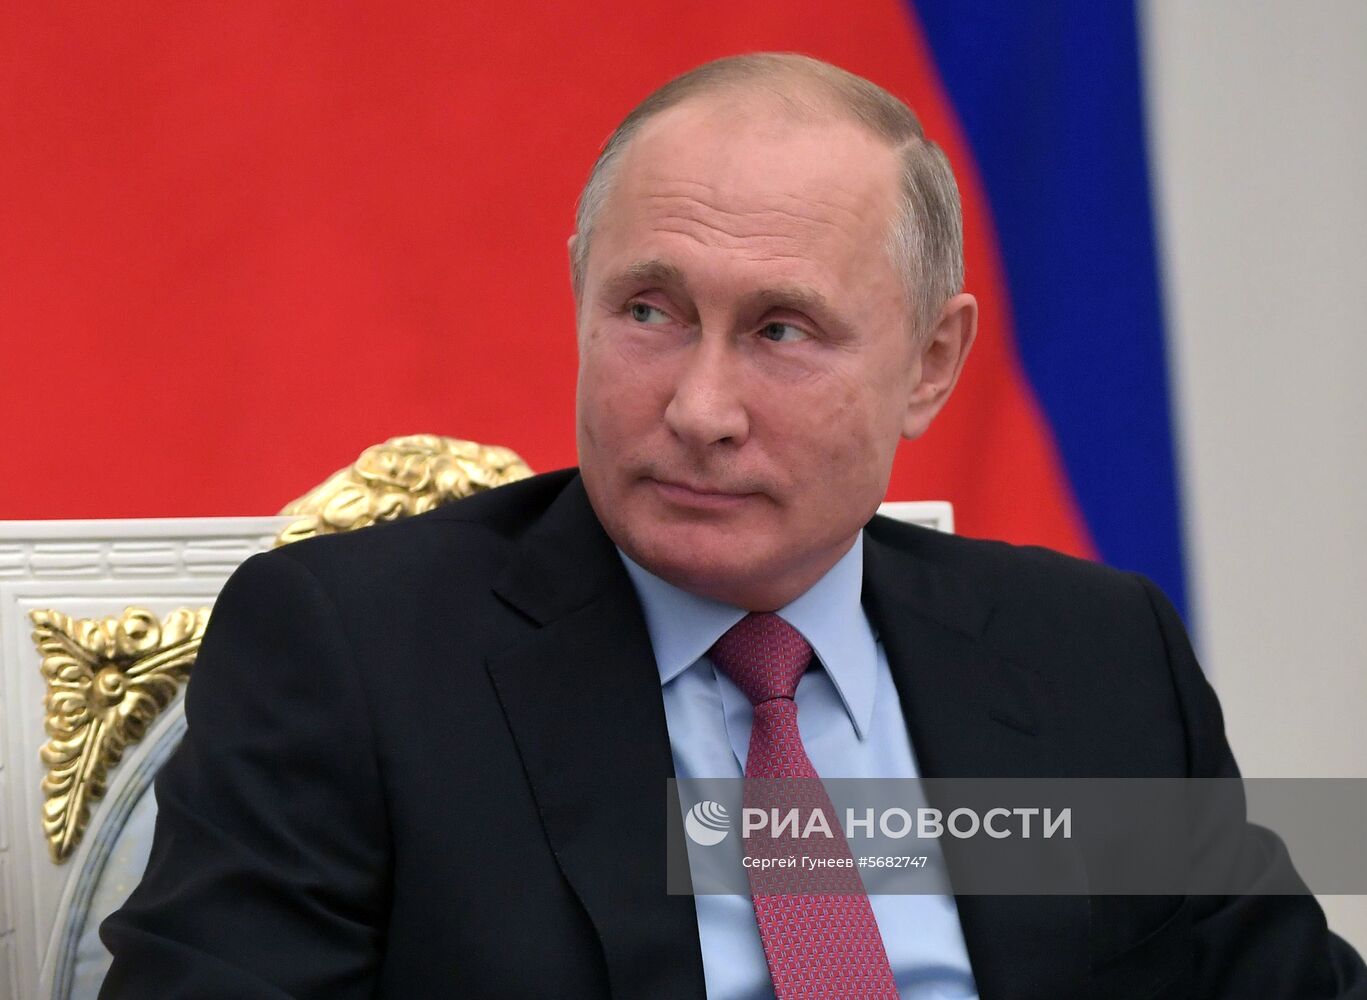 Президент РФ В. Путин по случаю 25-летия избирательной системы РФ встретился с руководством и членами ЦИК